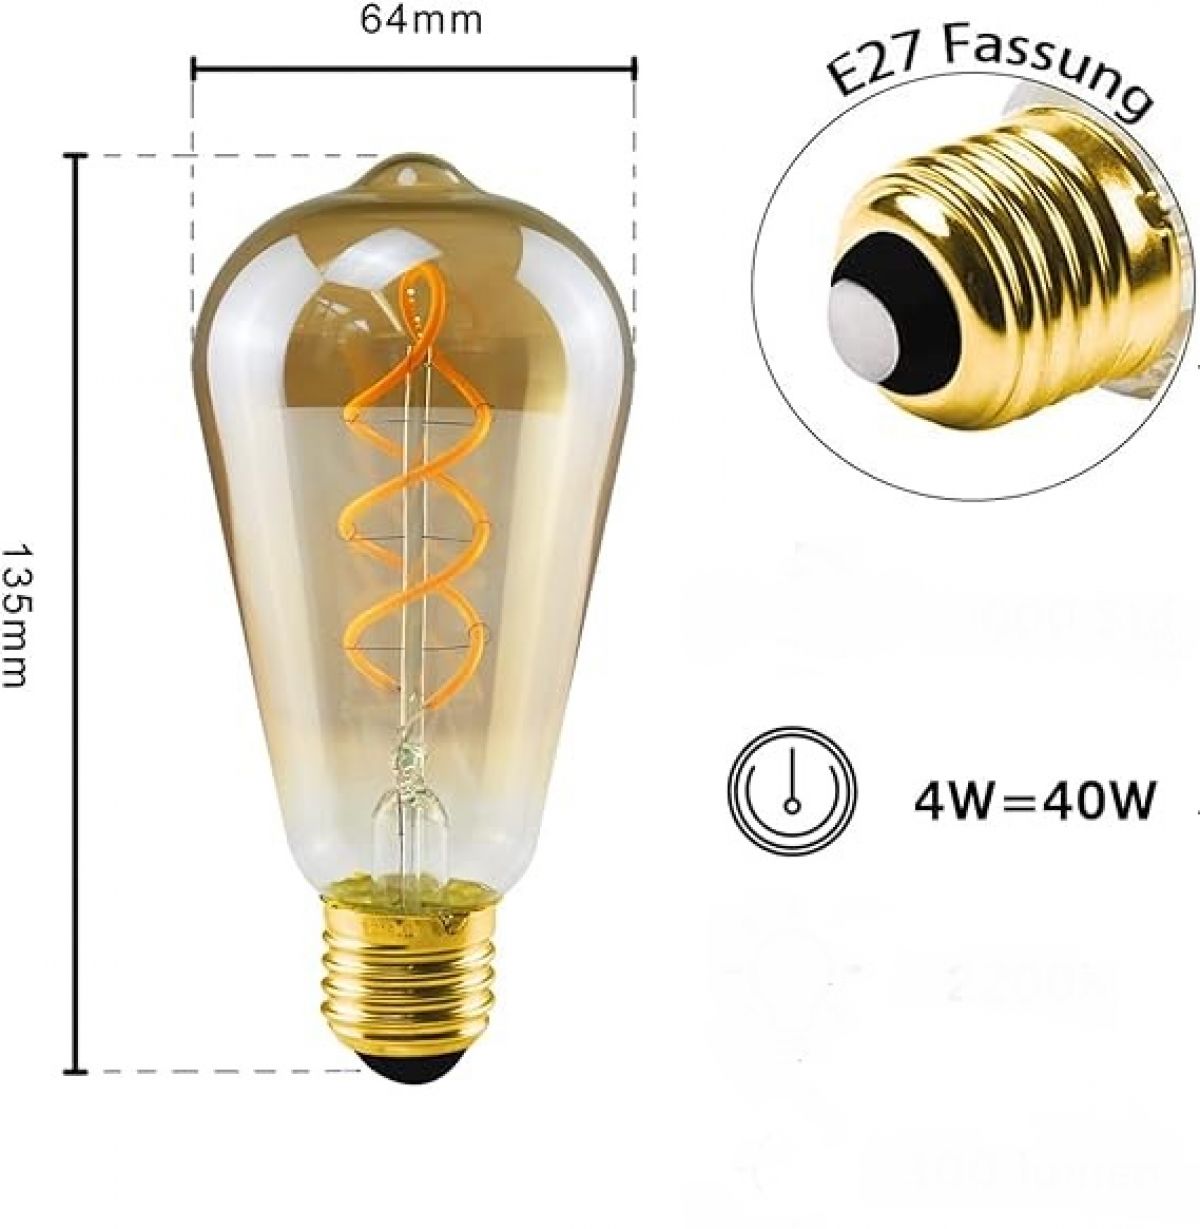 CROWN LED x 6pcs Edison Light Bulb E27